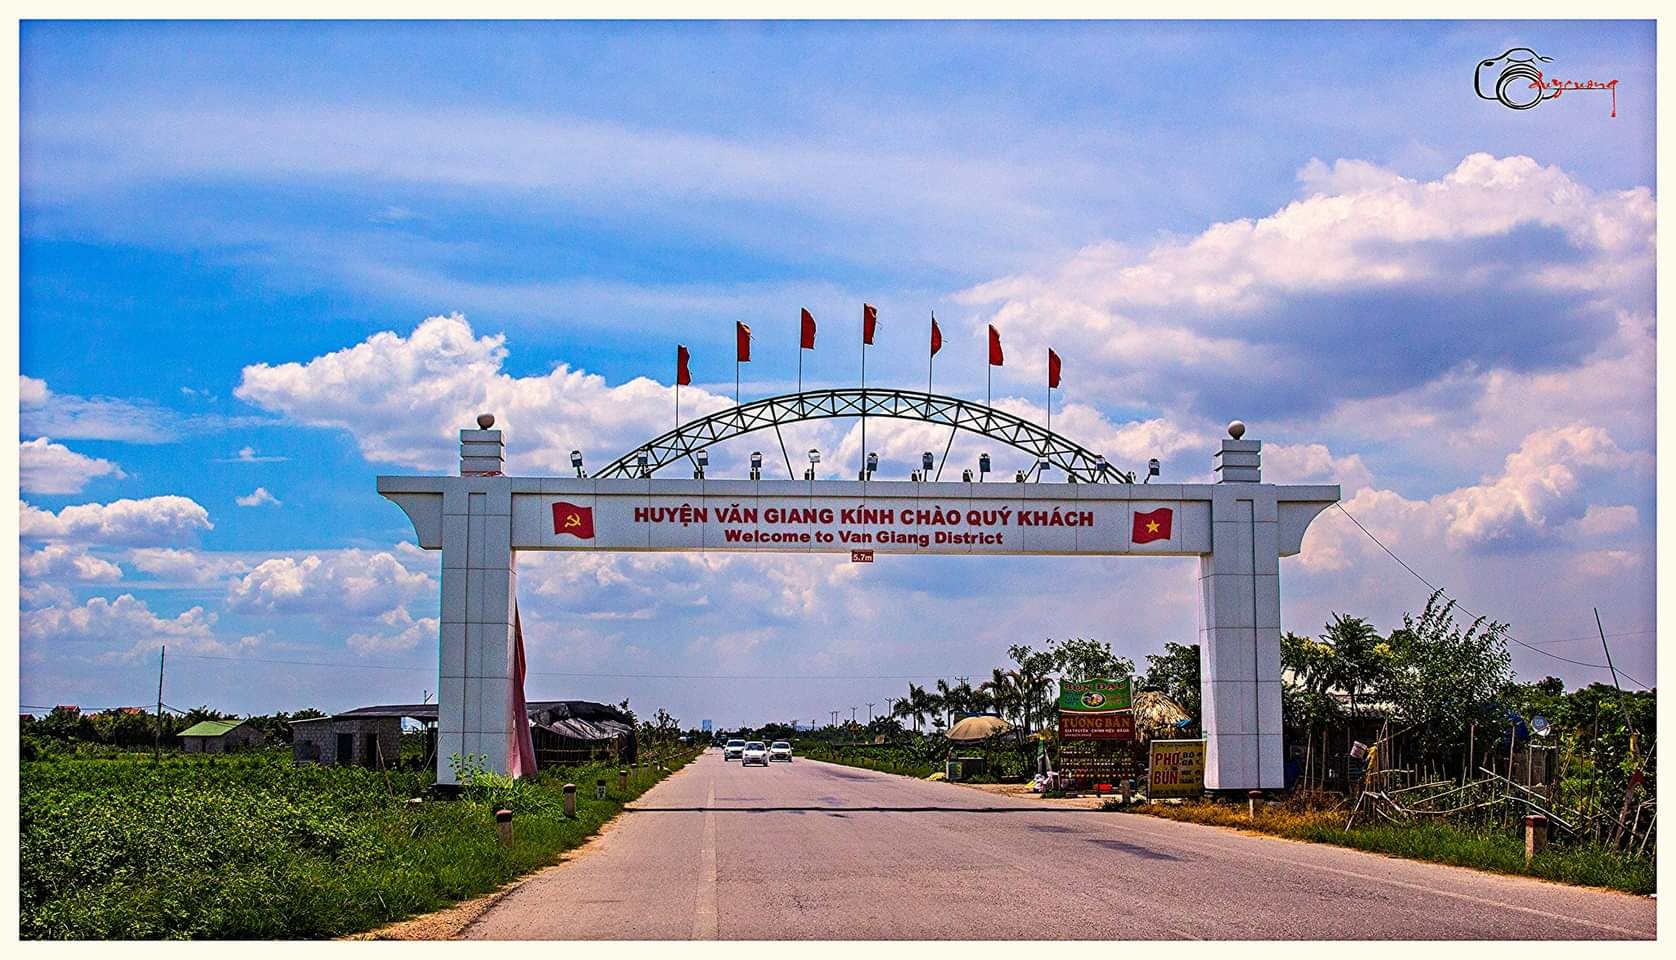 Chuyển nhượng đất công nghiệp gần cổng chào Văn Giang